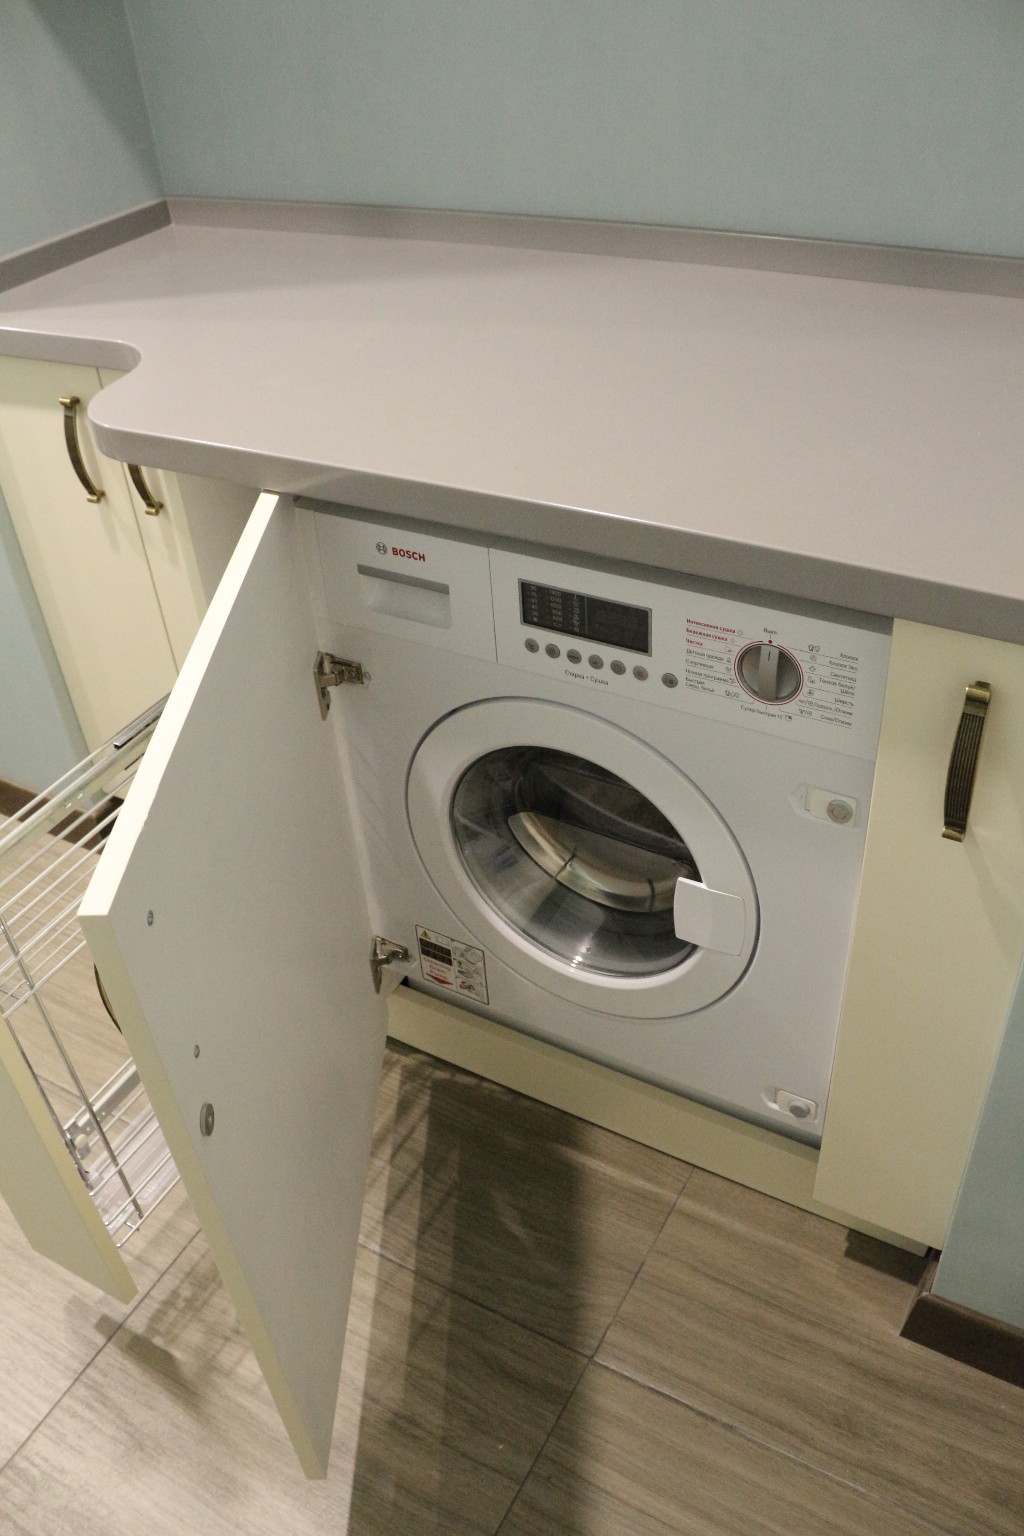 LG встраиваемая стиральная машина встроенная 60 см